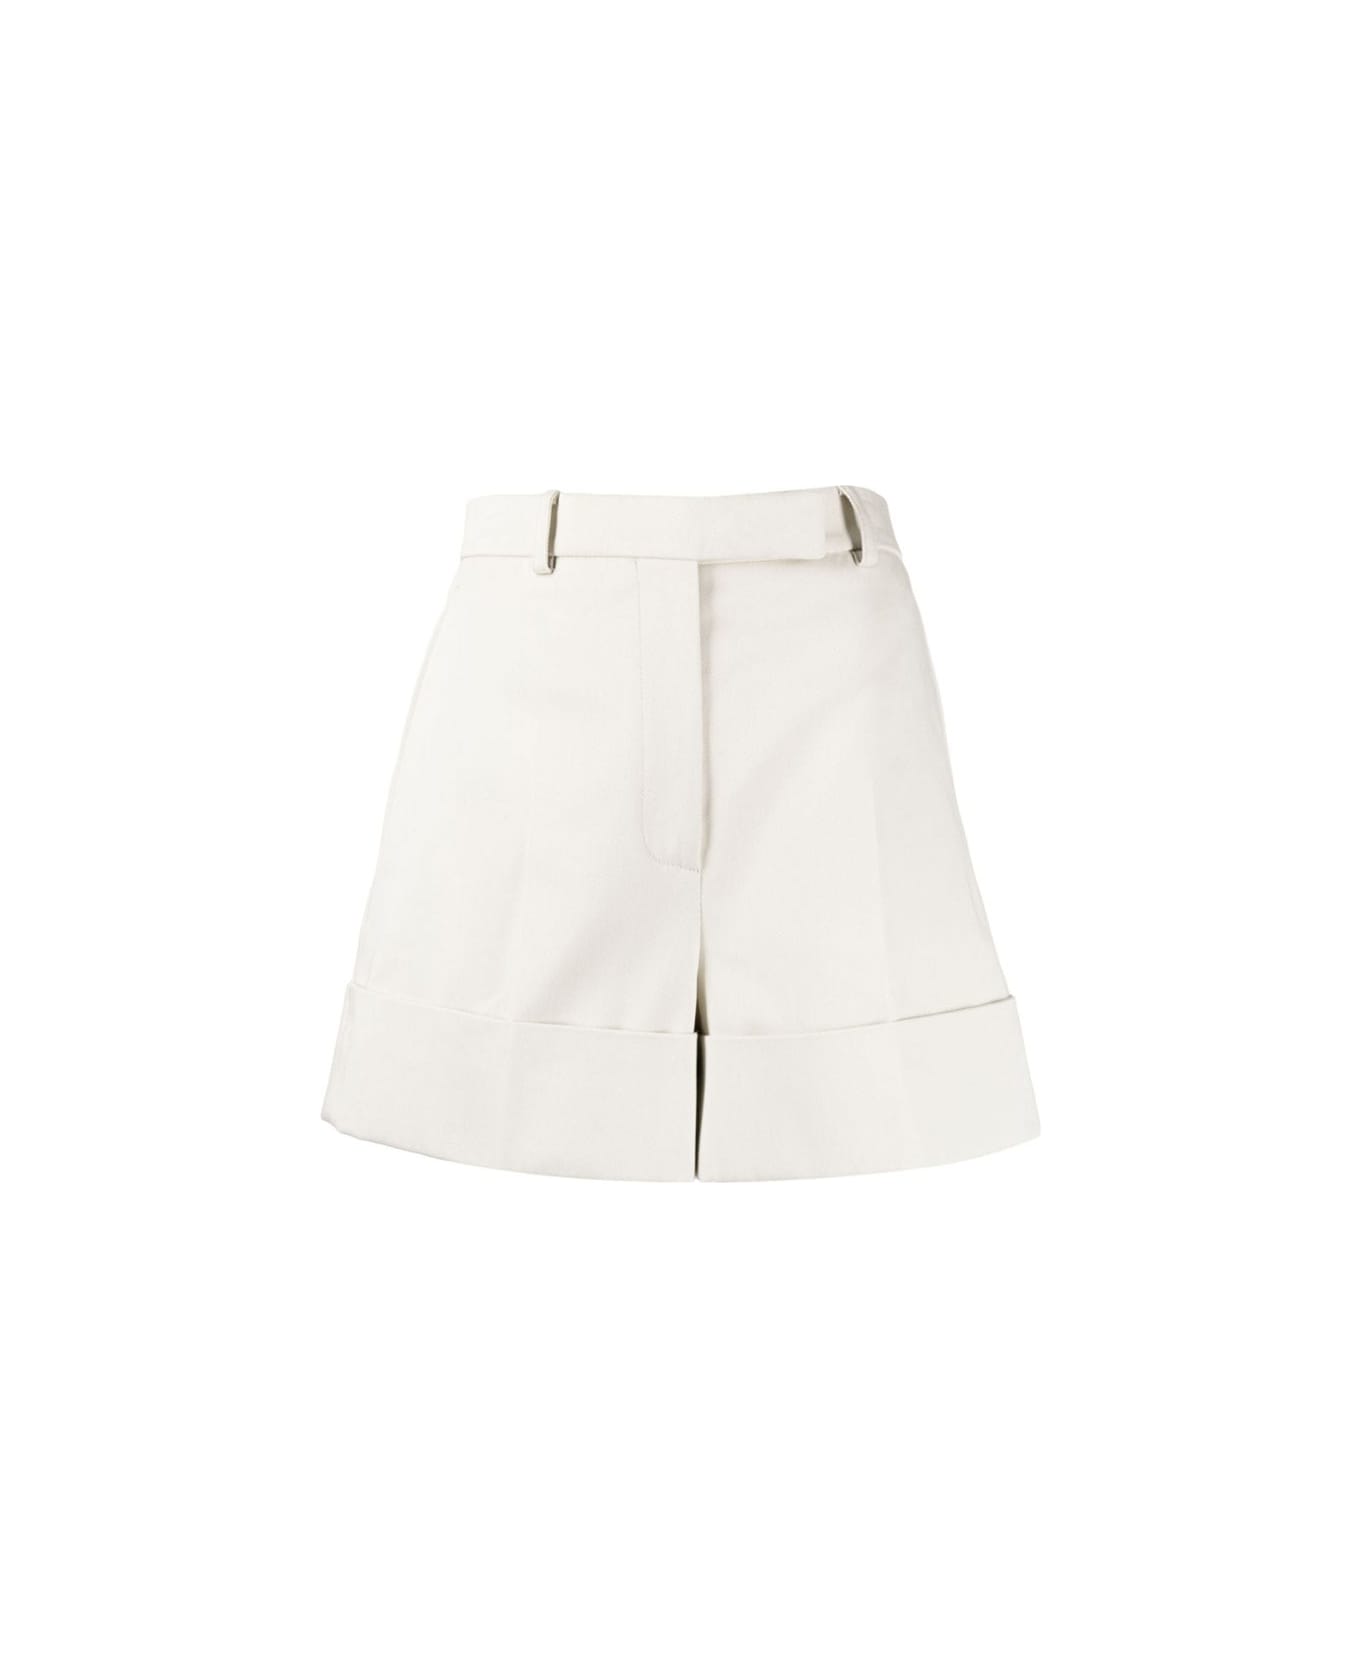 Thom Browne White Cotton Shorts - NATURAL WHITE